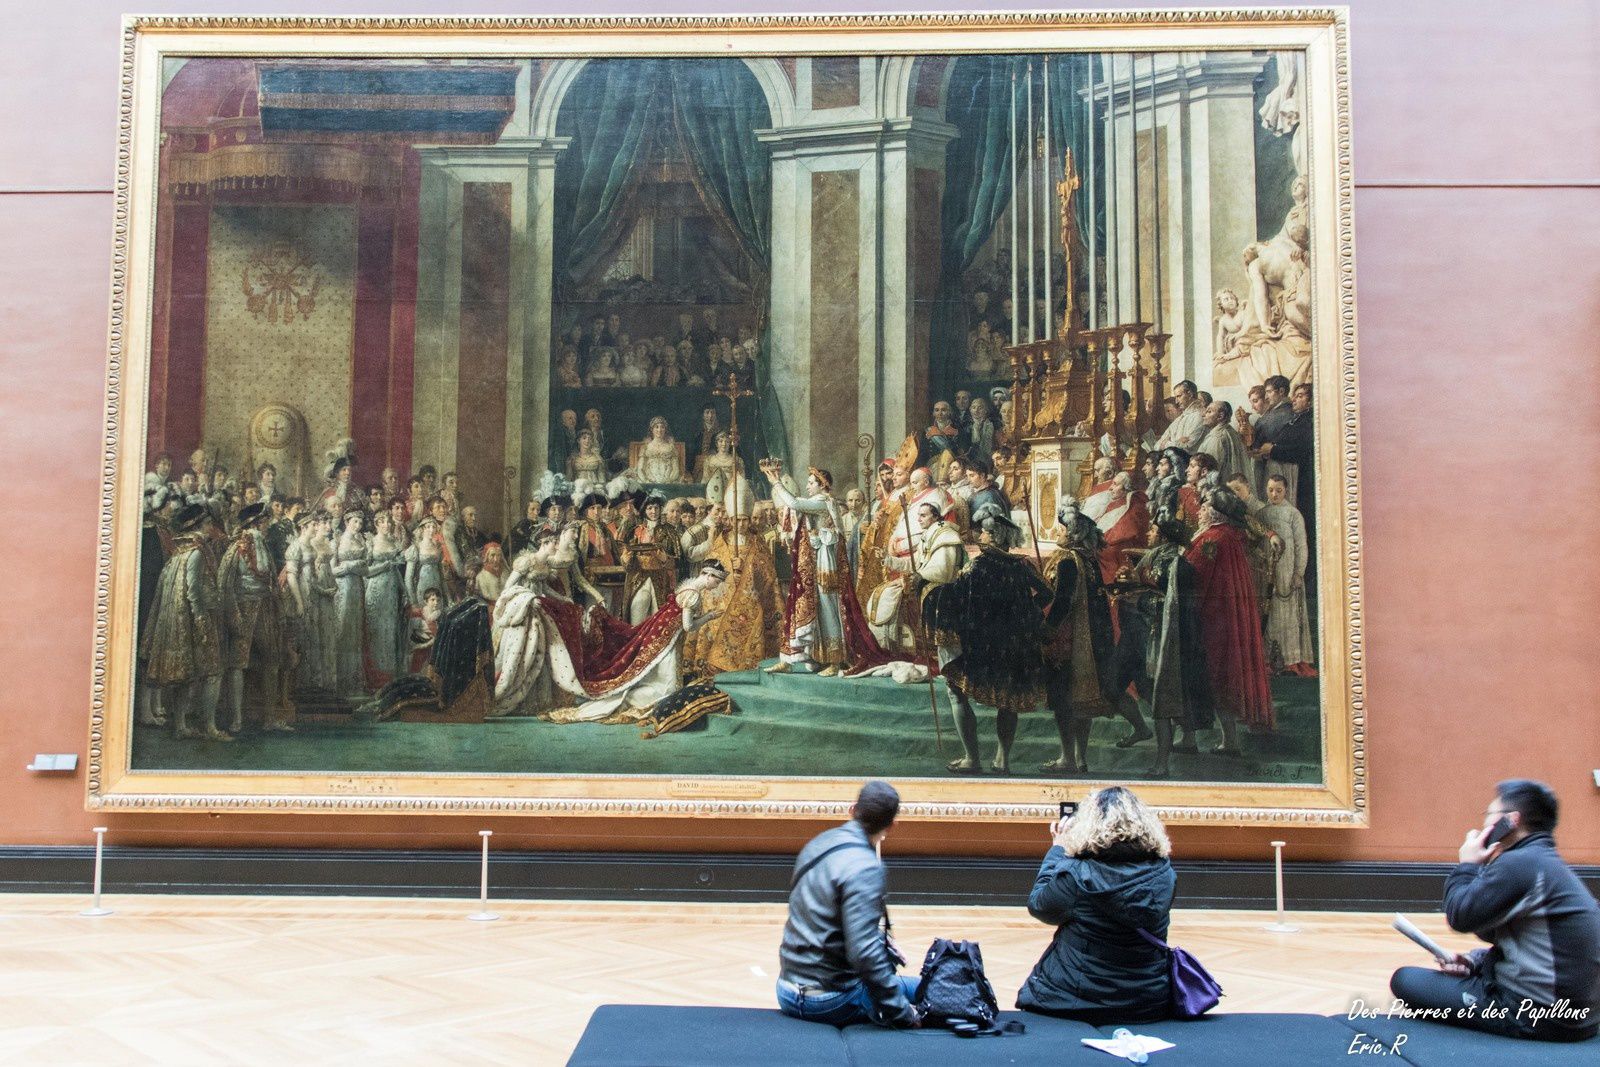 Le sacre ou le couronnement de Napoléon 1er - Jacques-Louis David - 1806 / 1807 - 9.79 x 6.21 m - Dans ce tableau commandé par Napoléon 1er, David met en scène le caractère fastueux du Sacre et son message politique et symbolique. 